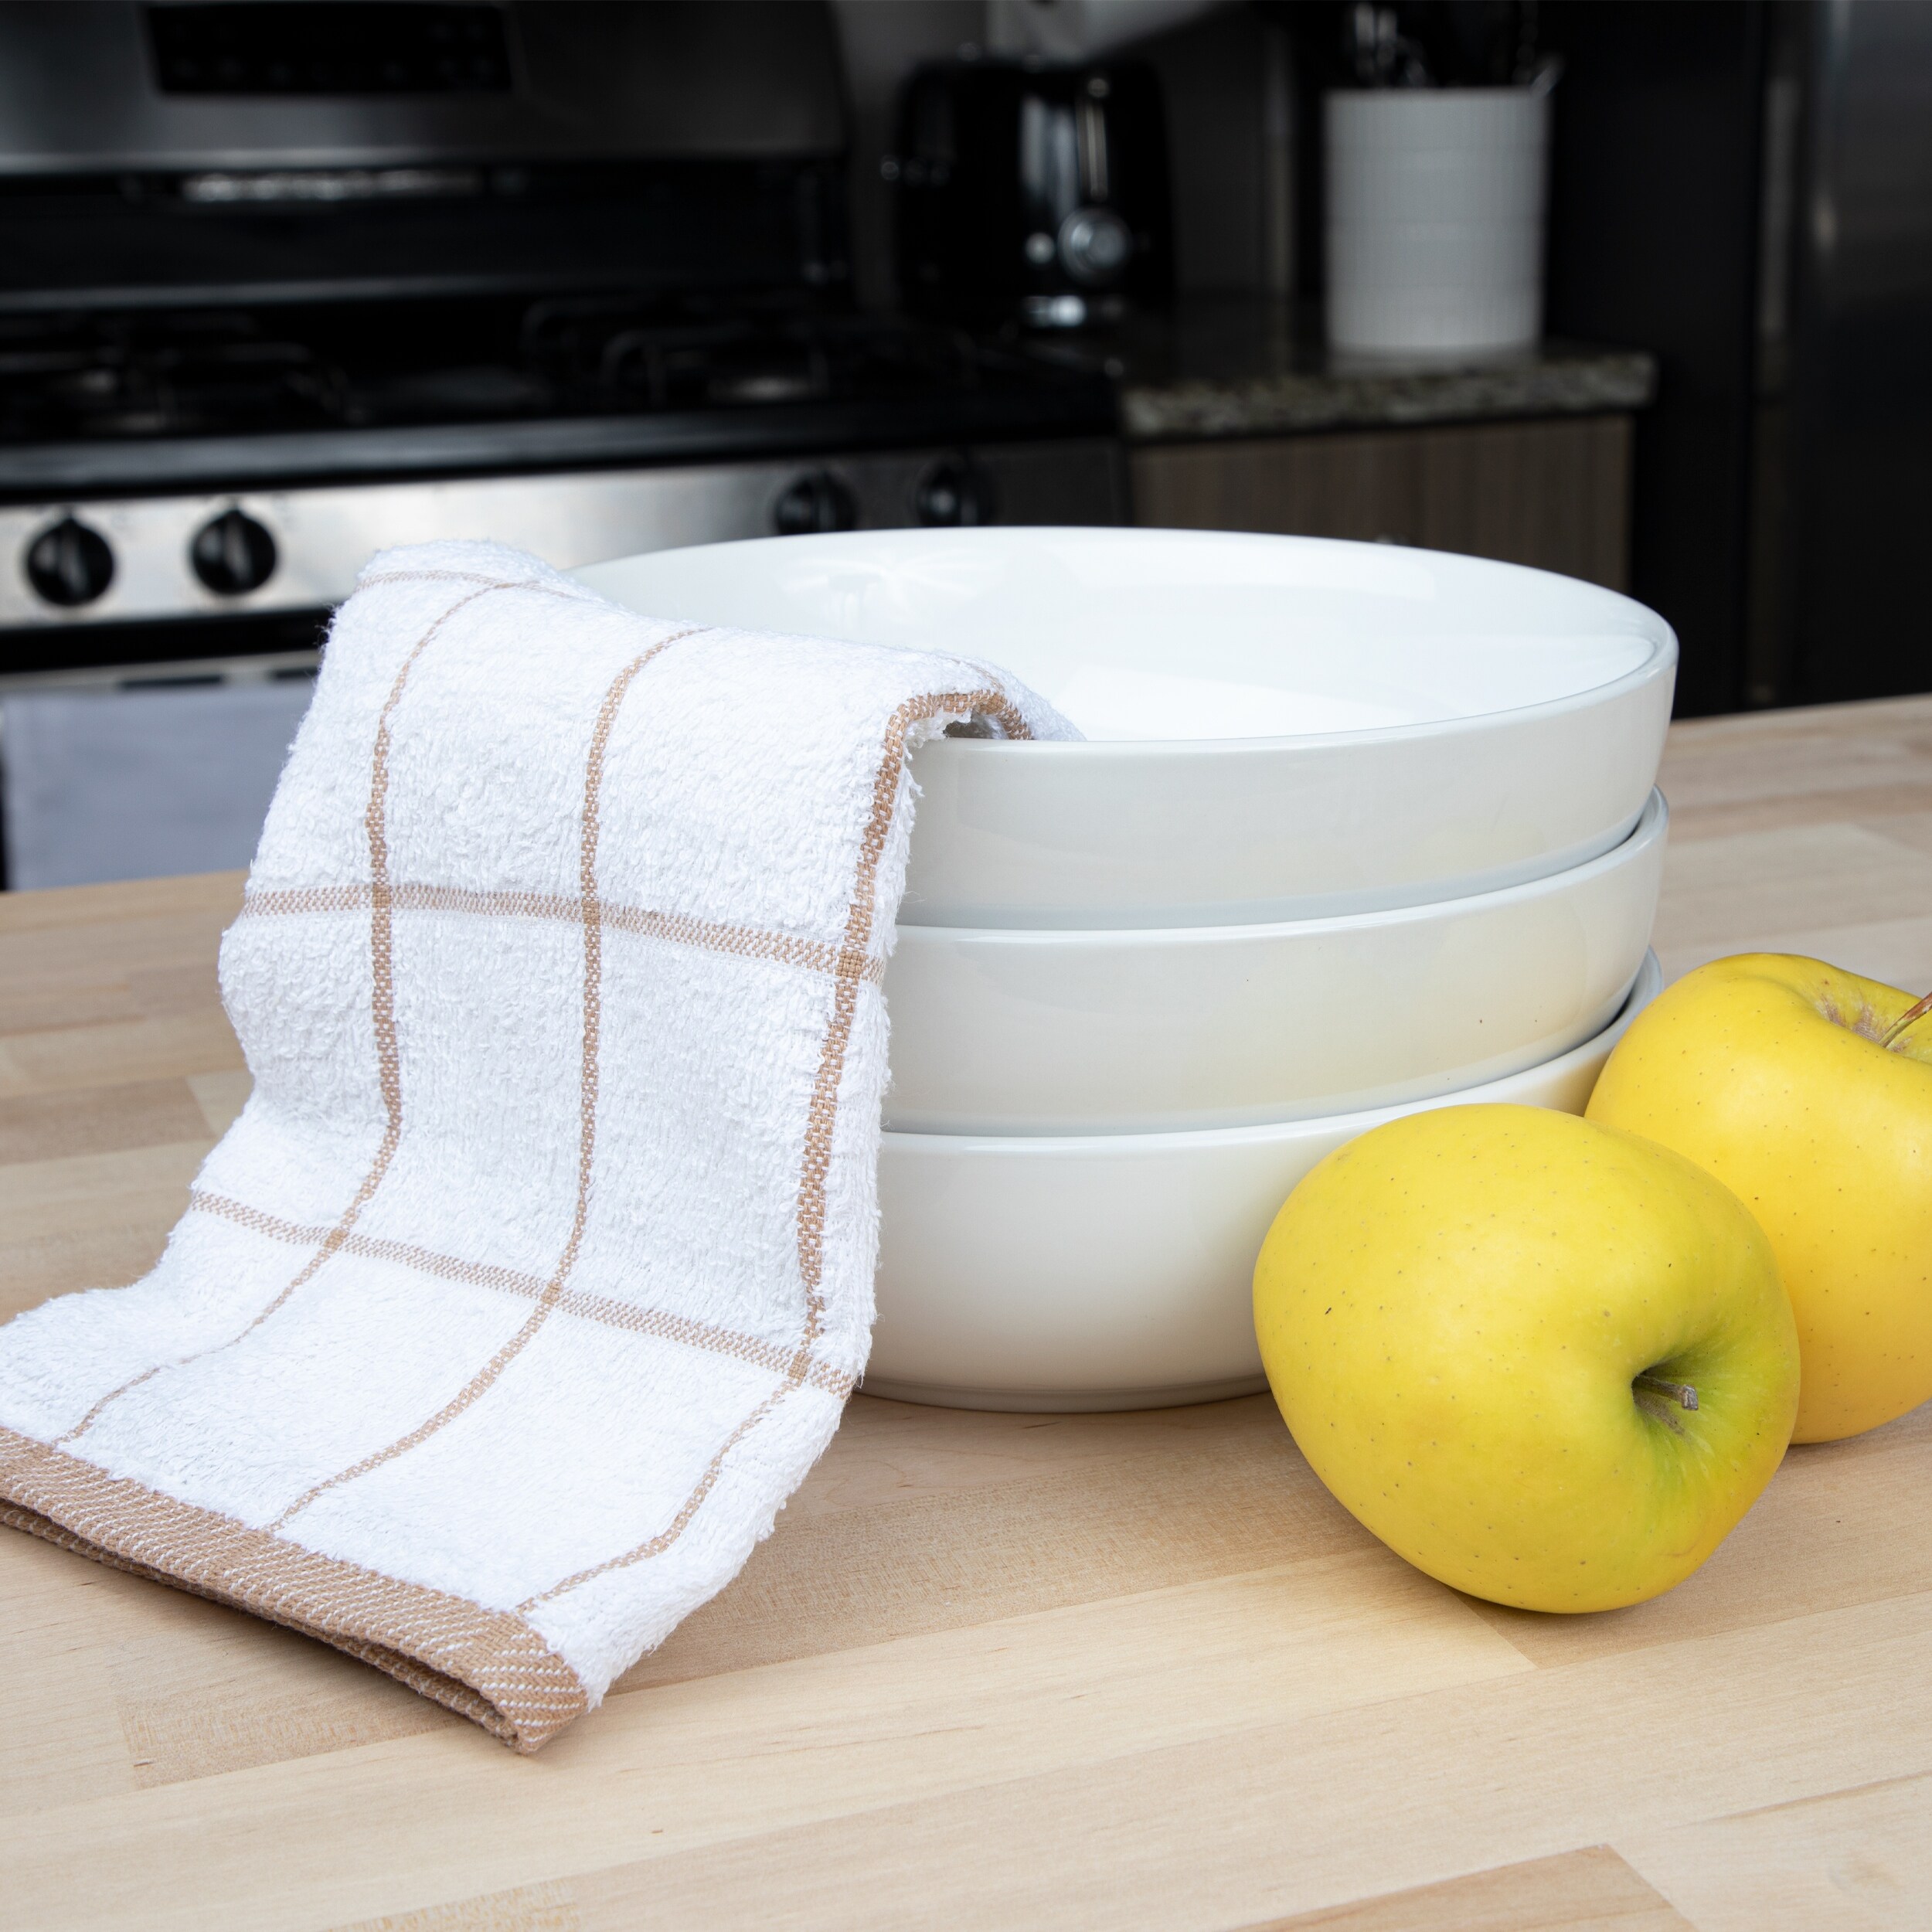 Kitchen Dish Towels, 6 Pack Bulk Cotton Kitchen Towels Set, Super